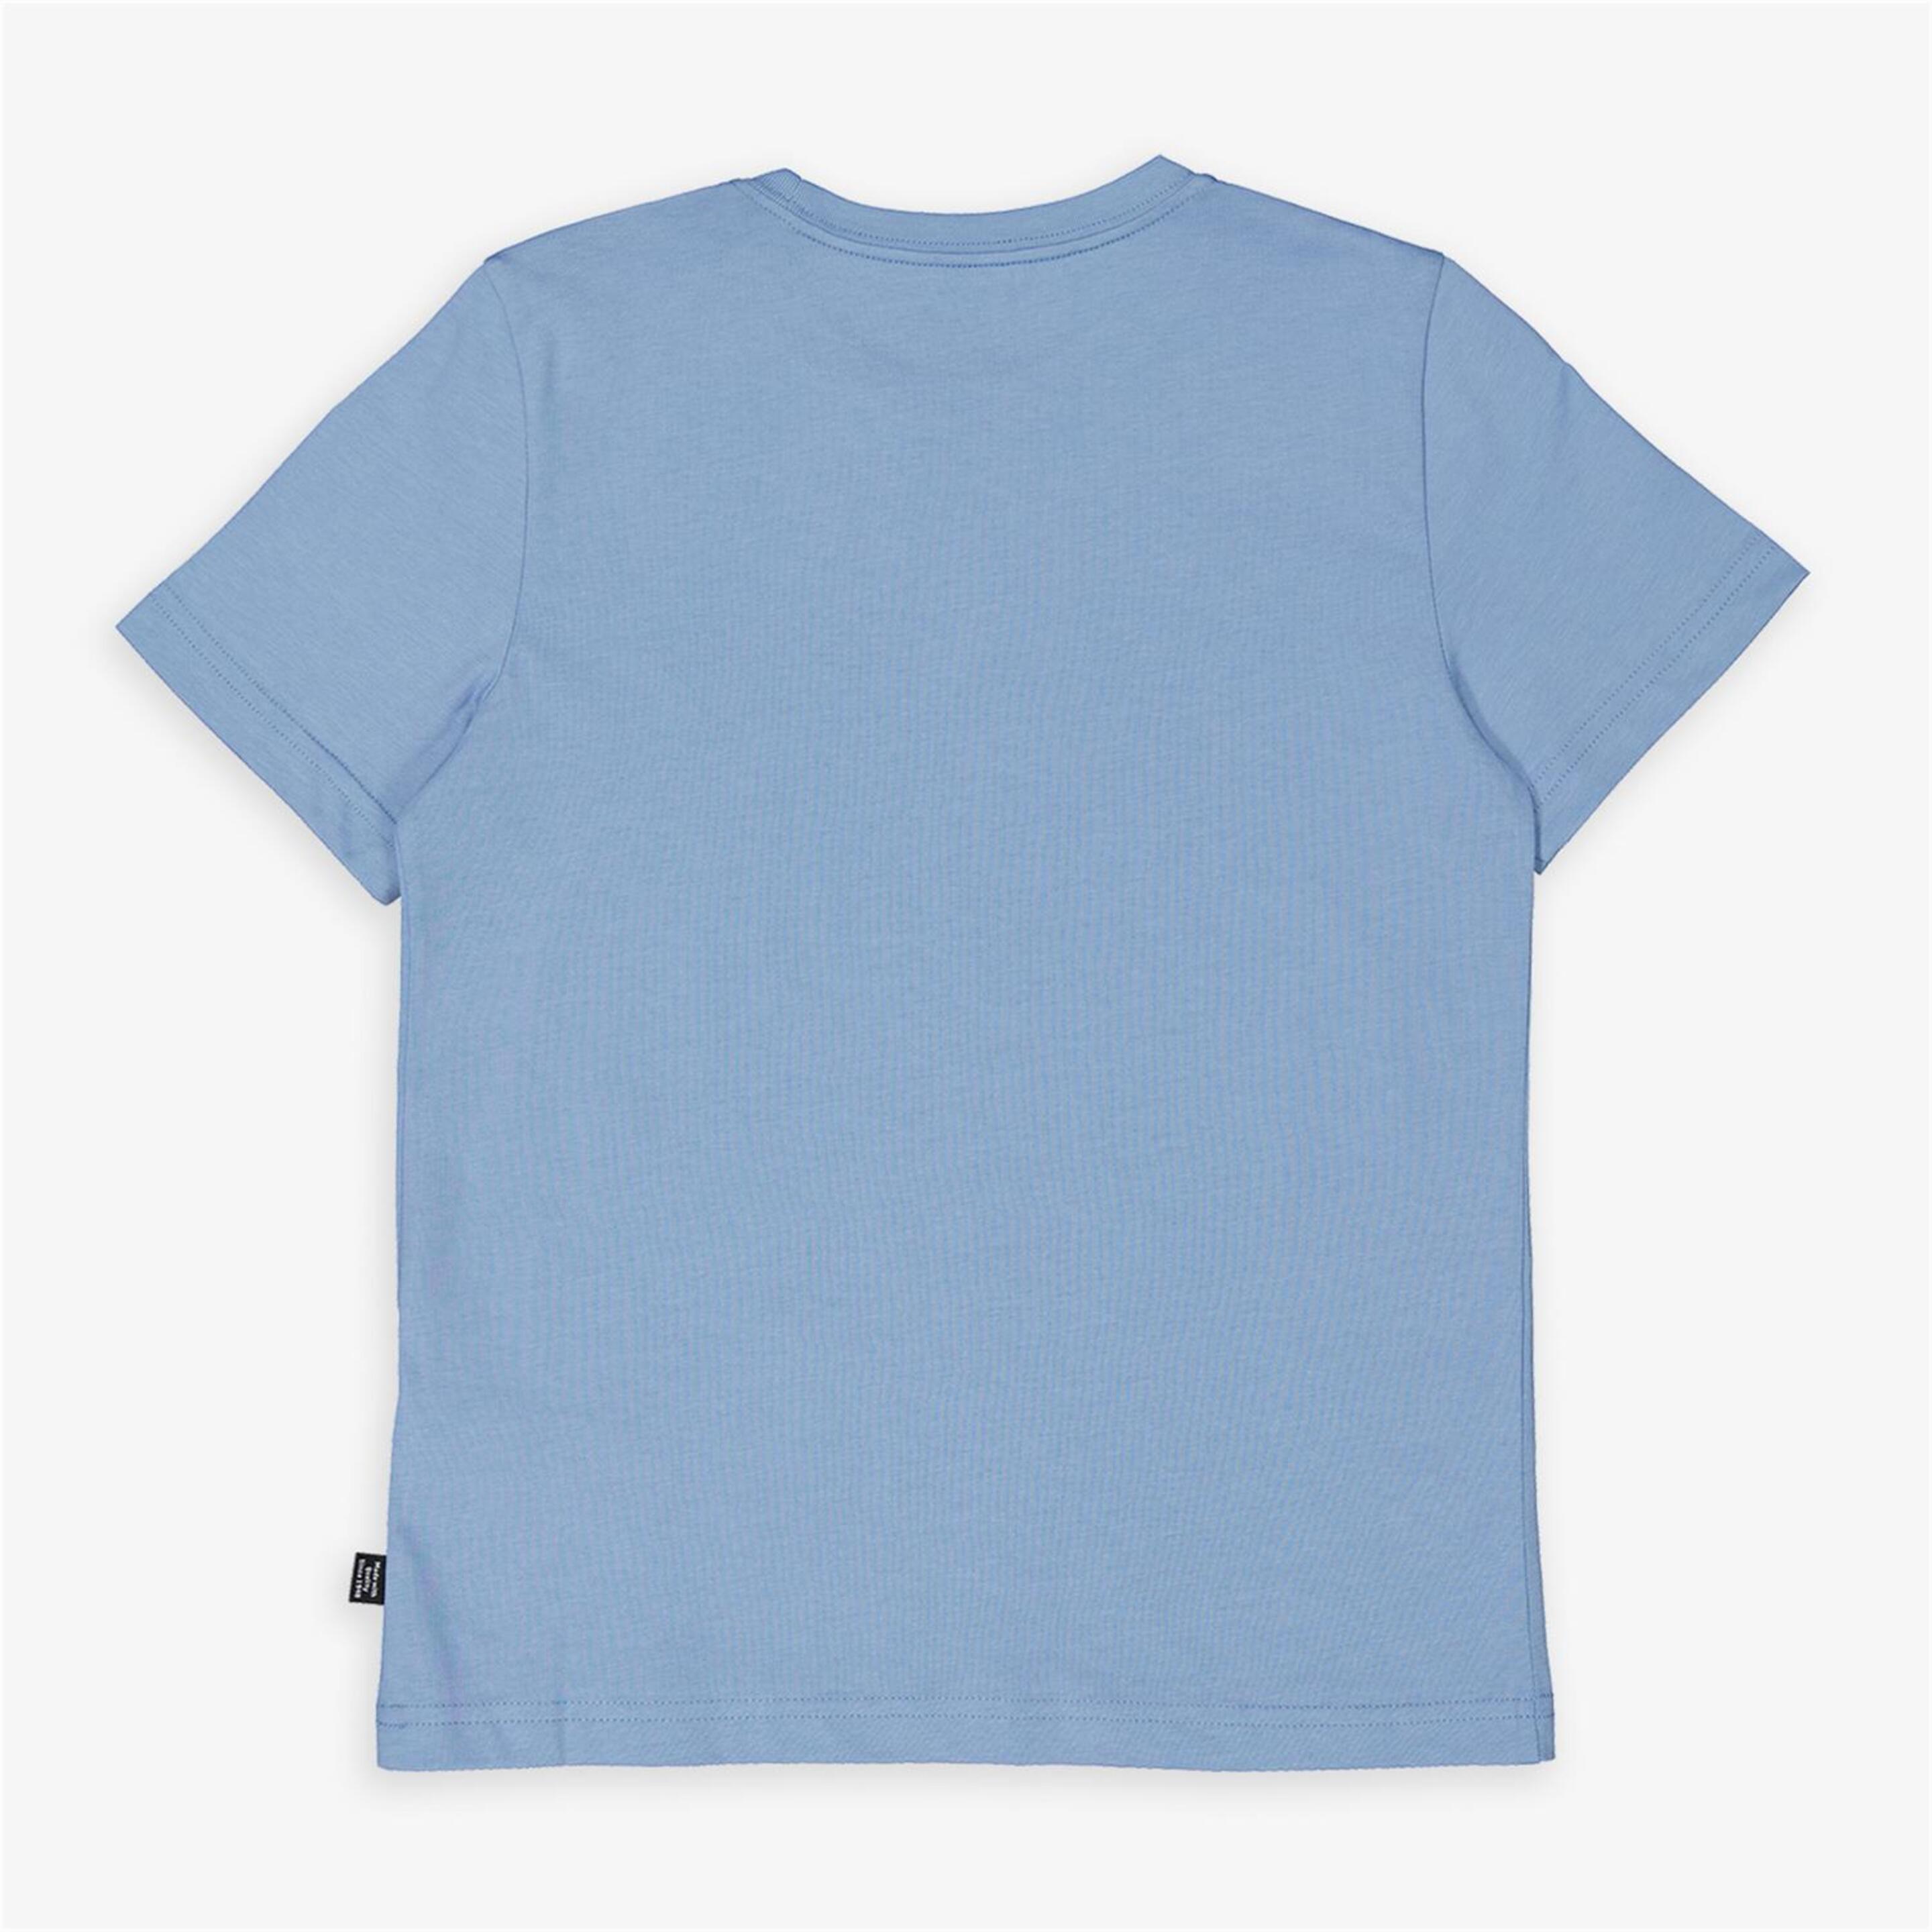 Camiseta Puma - Azul - Camiseta Niño